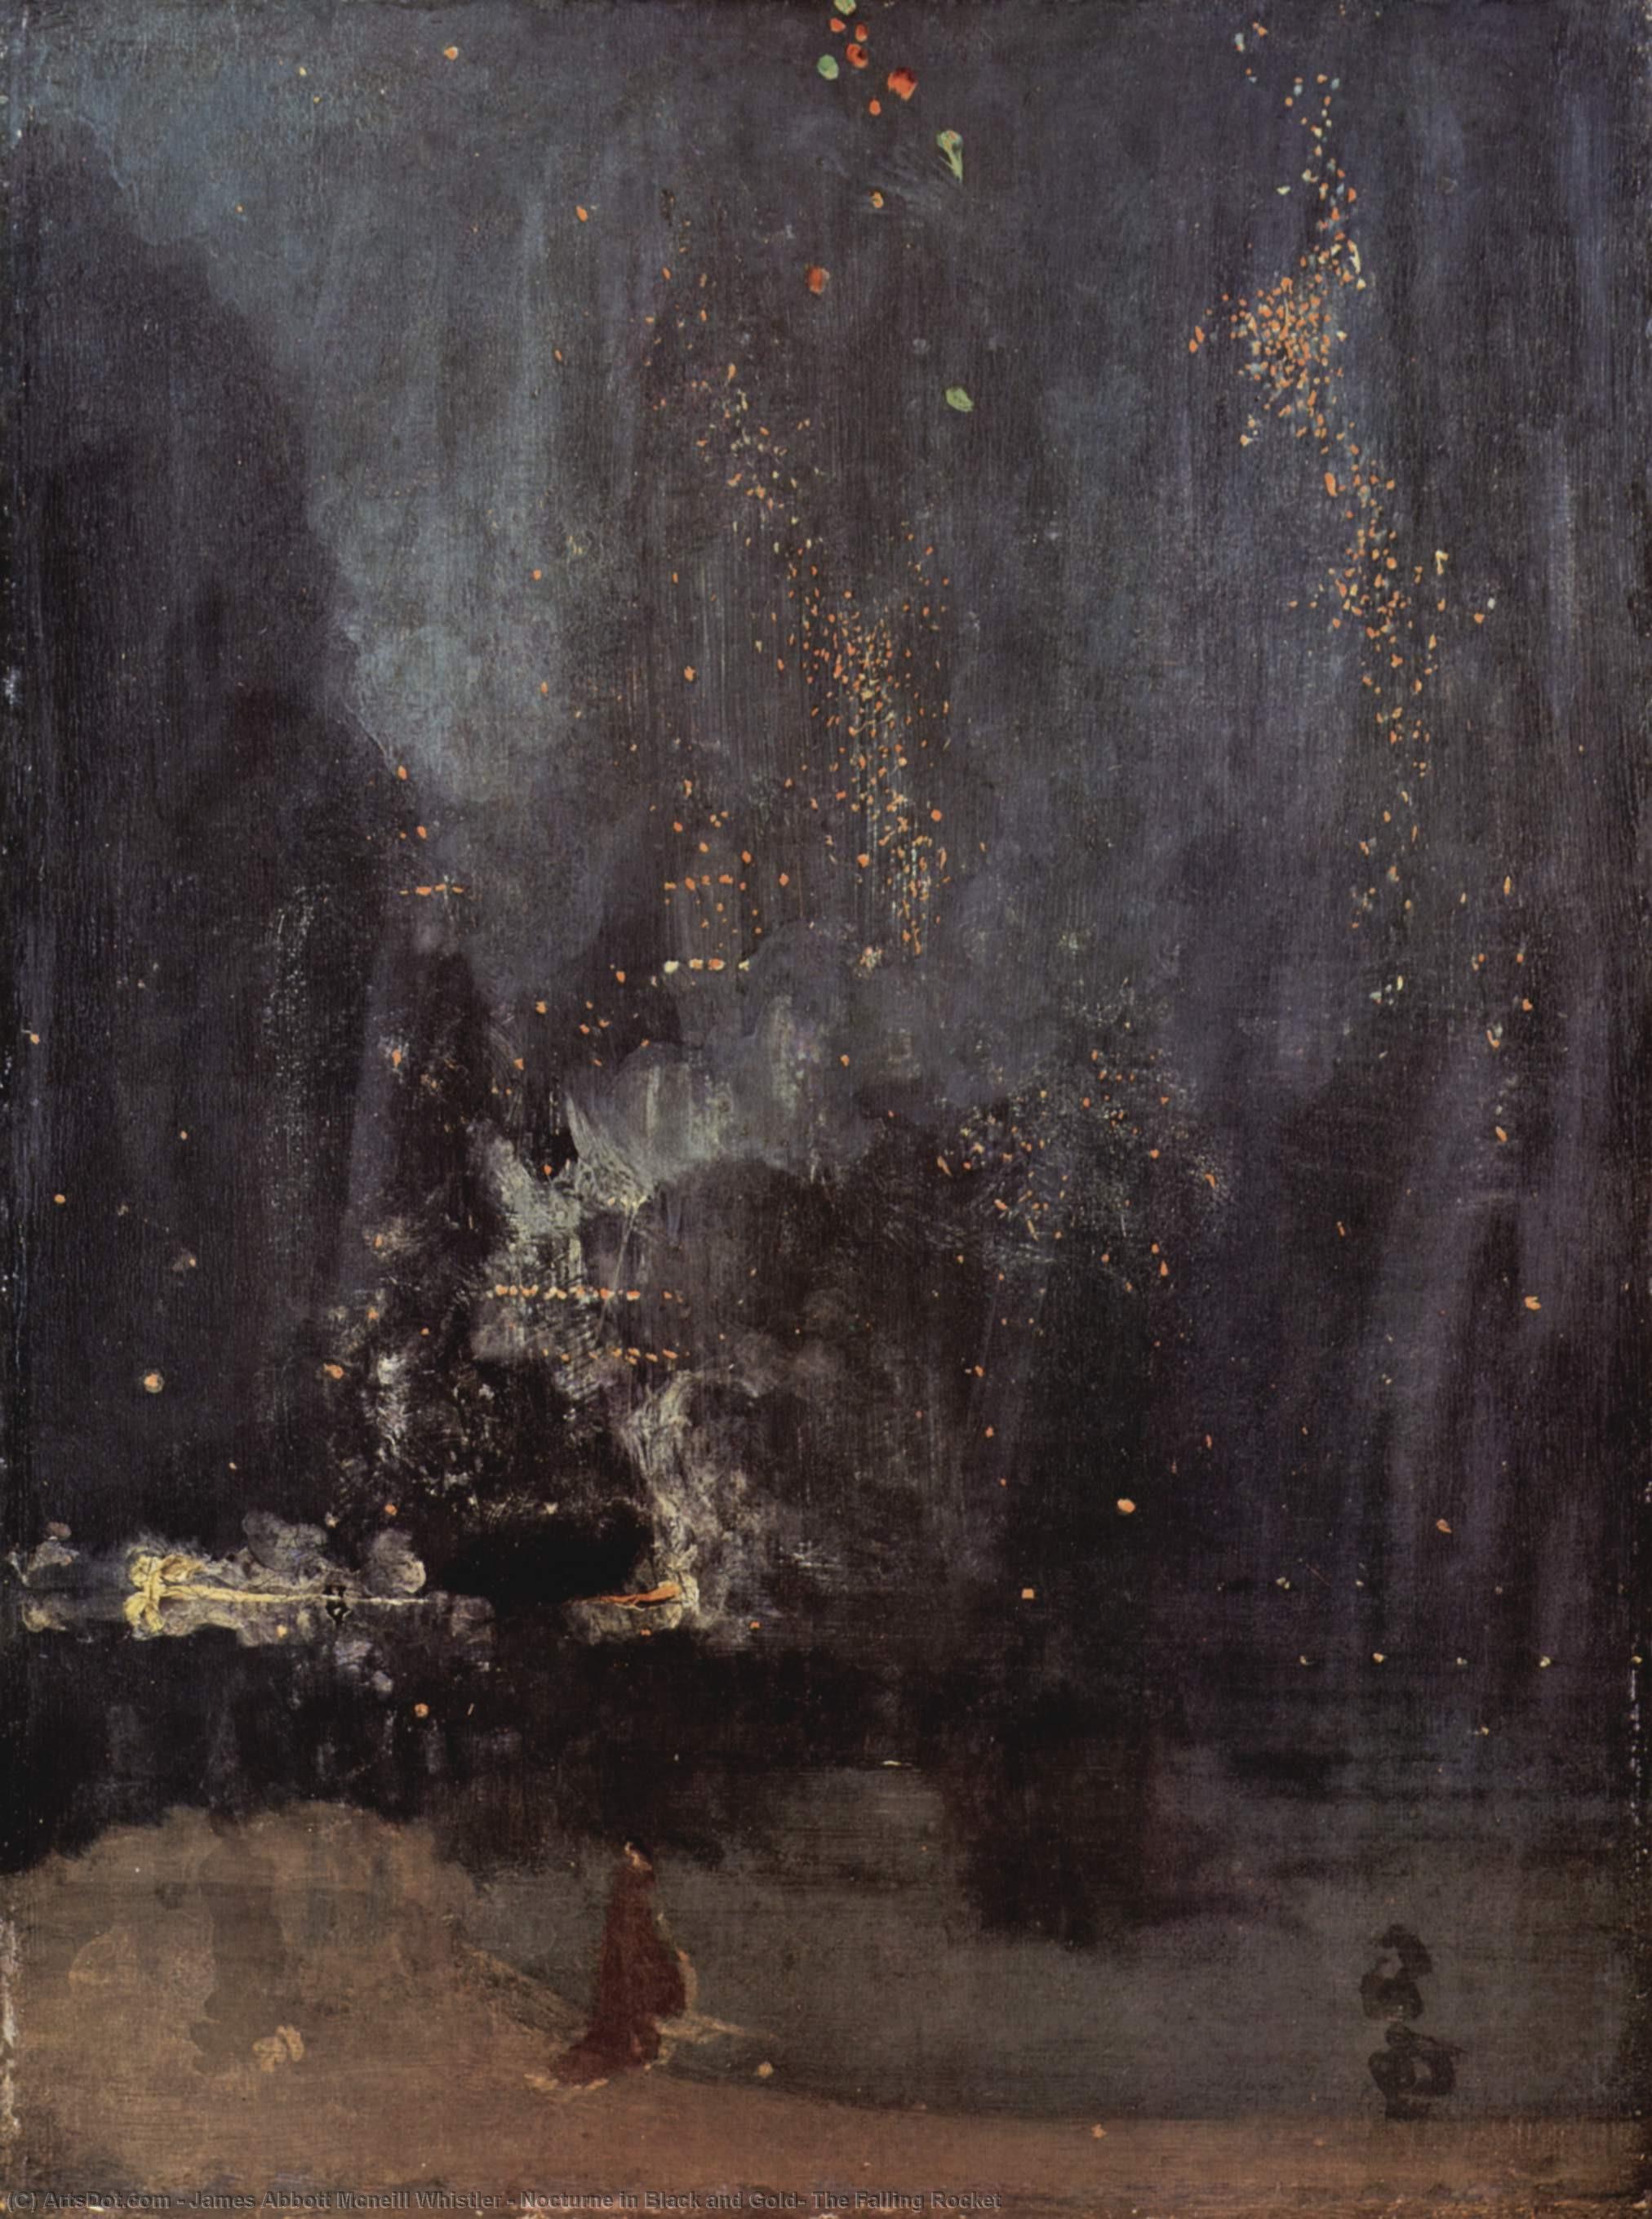 Wikoo.org - موسوعة الفنون الجميلة - اللوحة، العمل الفني James Abbott Mcneill Whistler - Nocturne in Black and Gold, The Falling Rocket